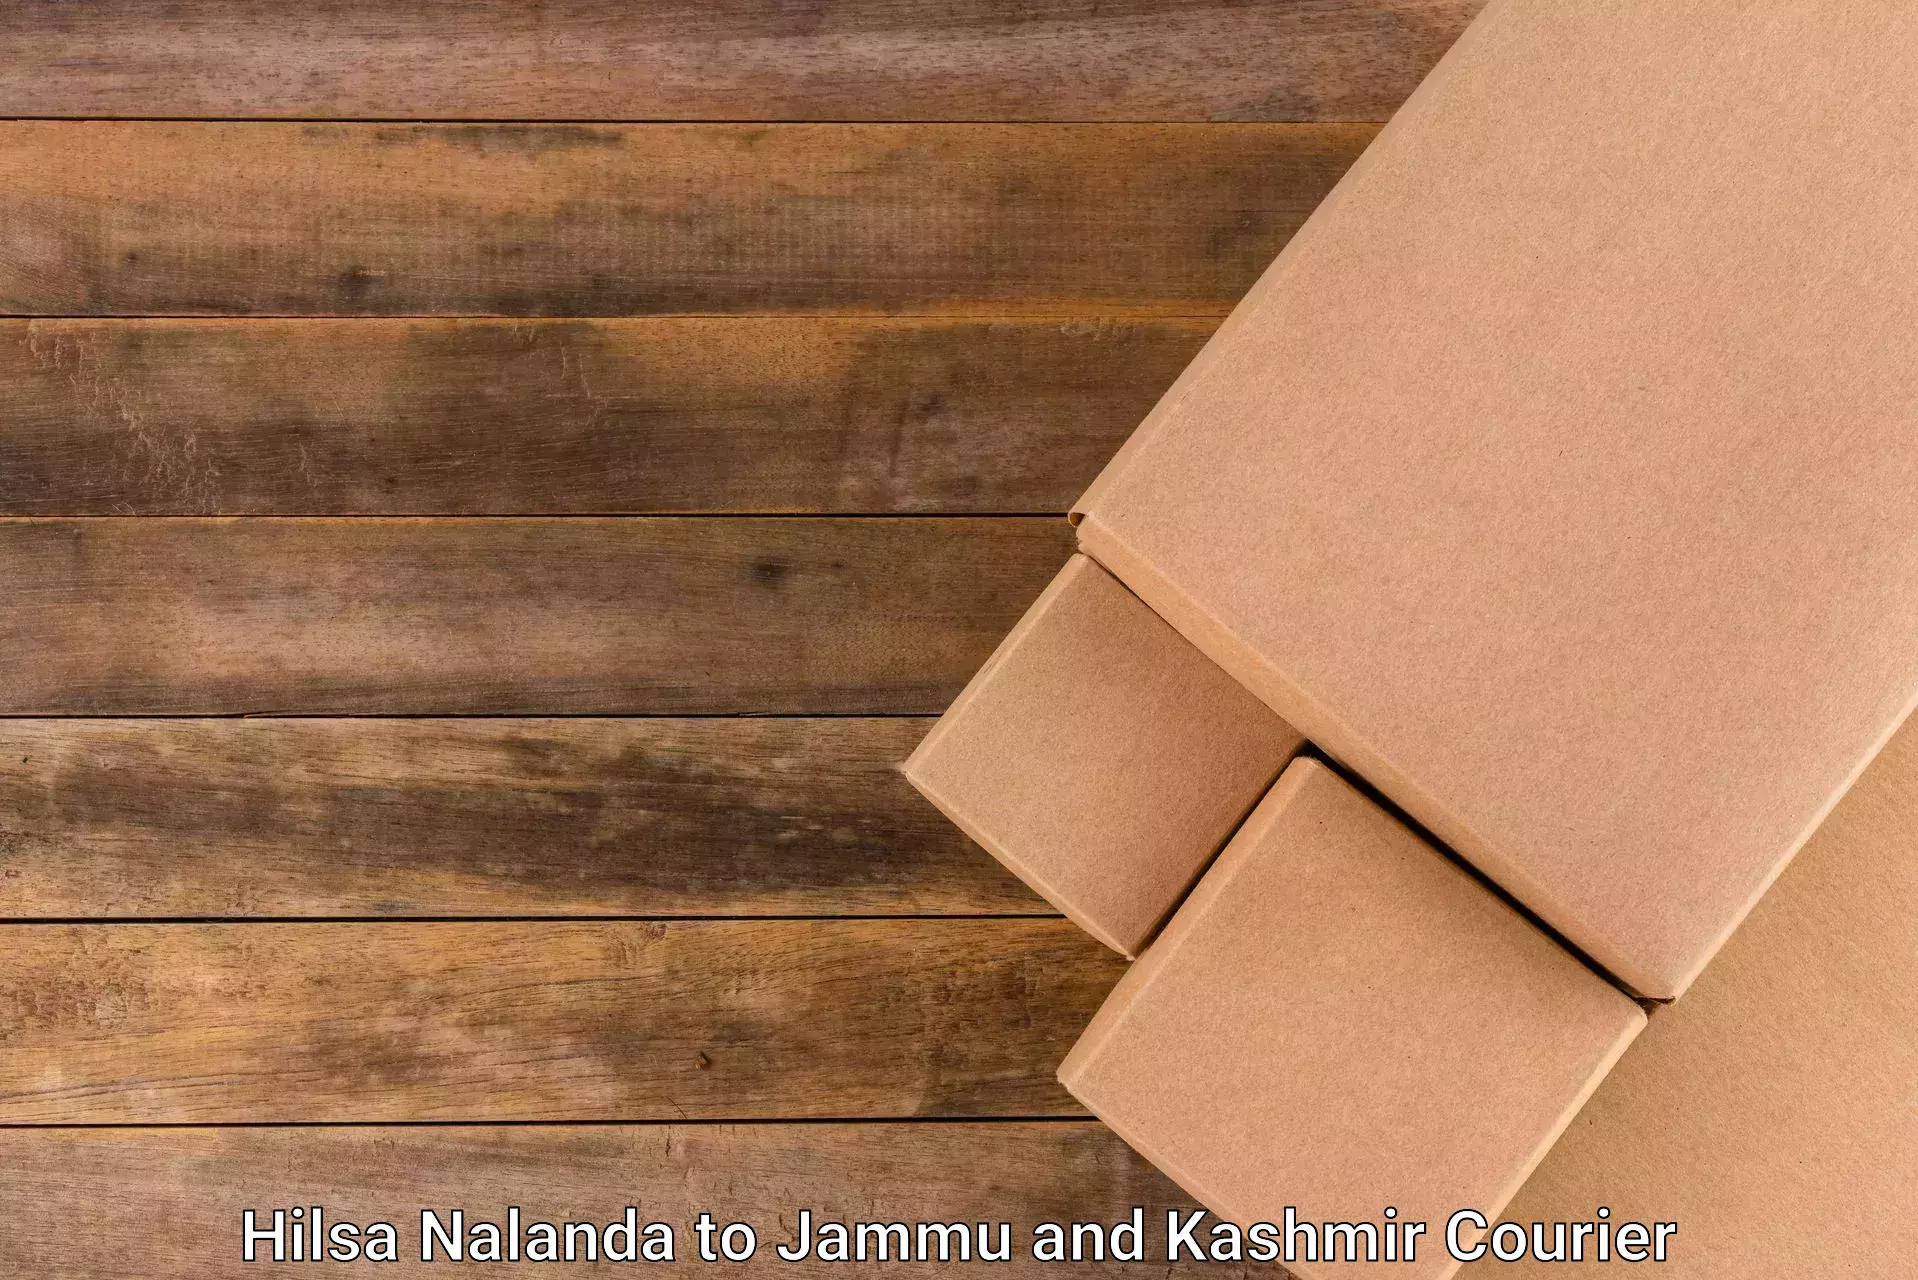 High value parcel delivery Hilsa Nalanda to Kishtwar